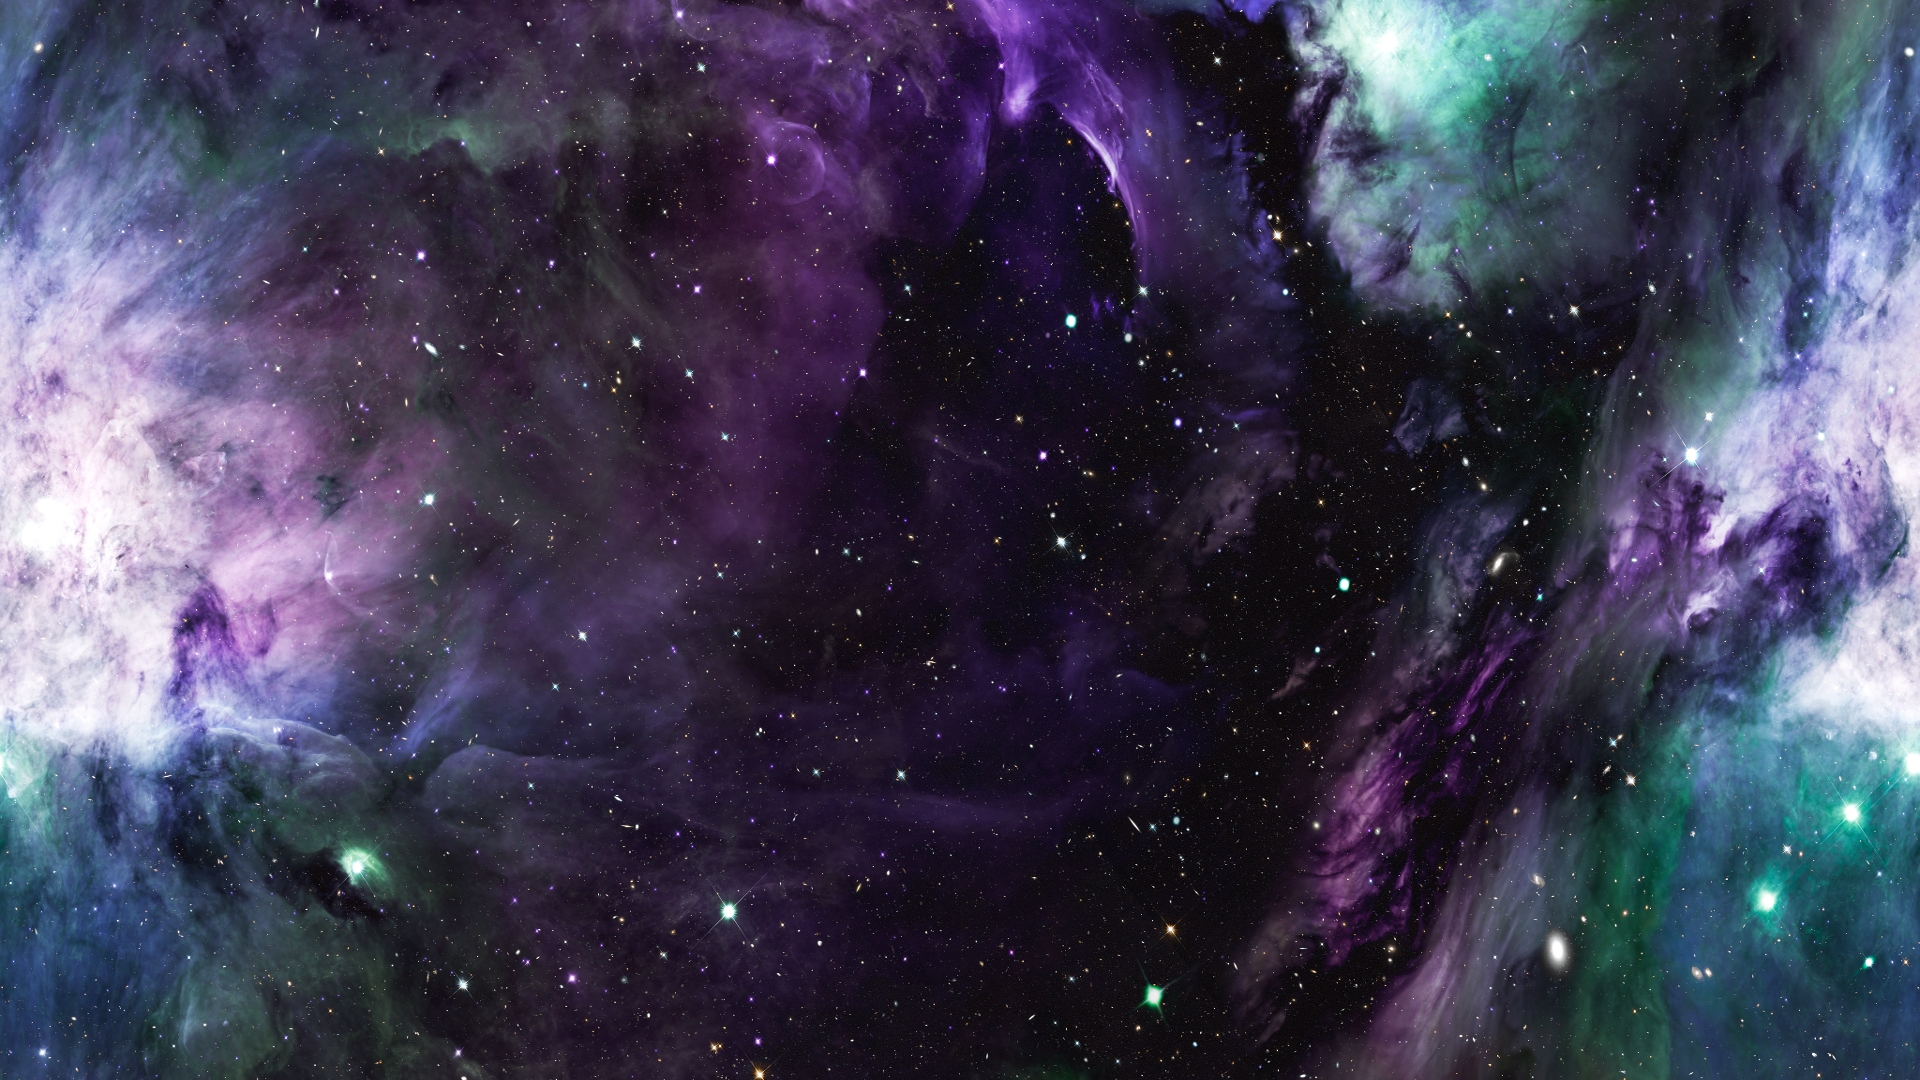 Nebula HD Wallpaper  Background Image  1920x1080  ID 